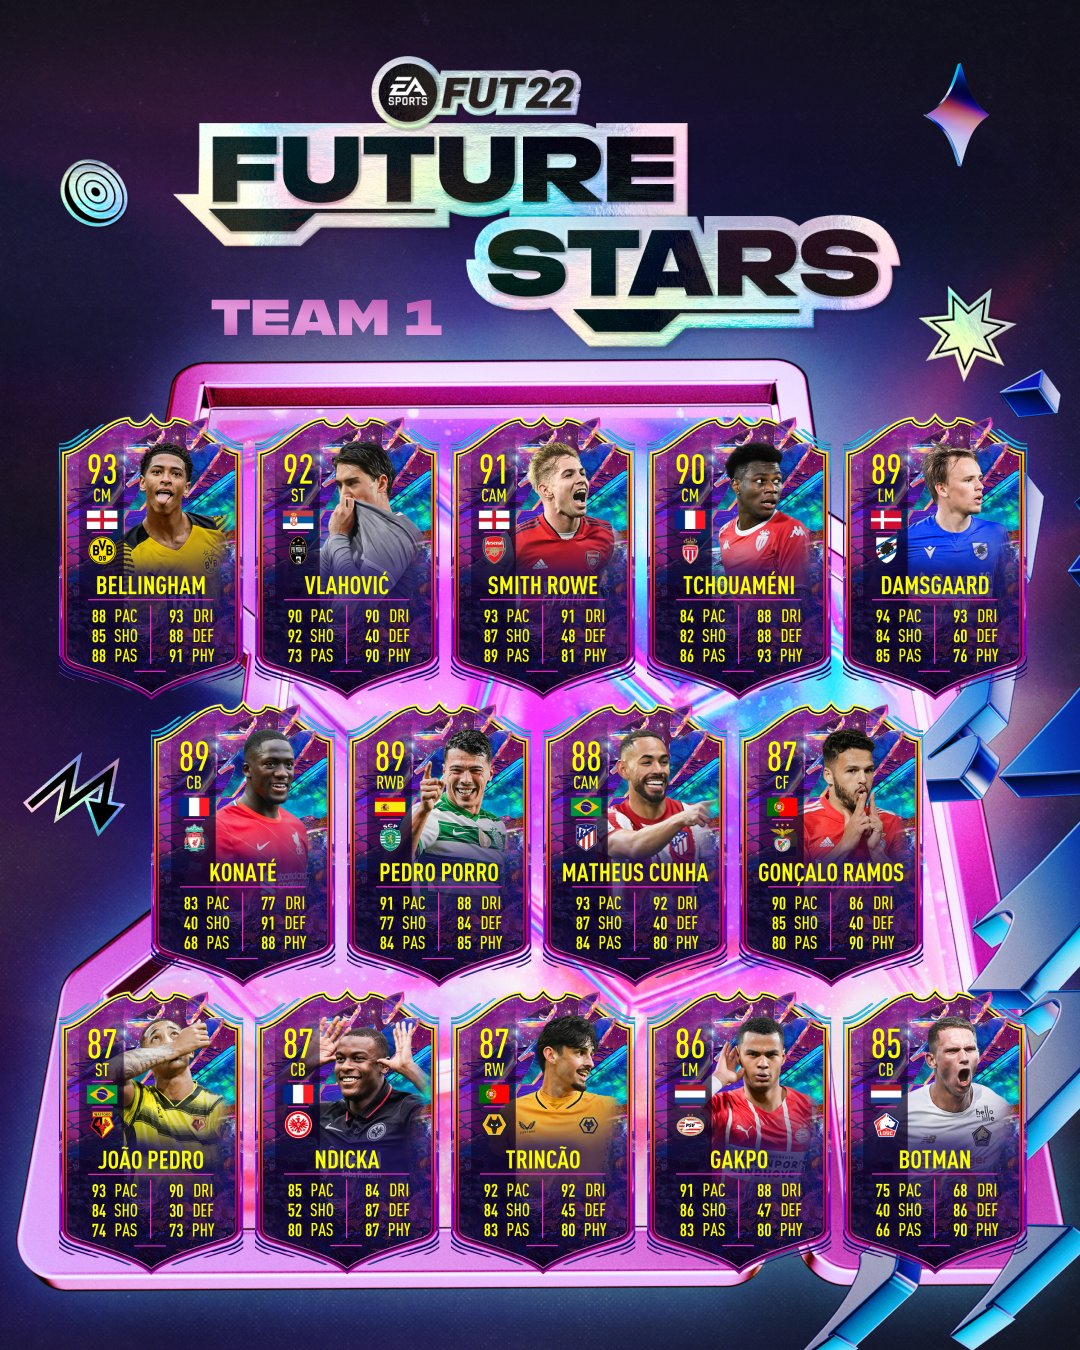 FIFA 22 Ultimate Team Future Stars Team 1 FUT